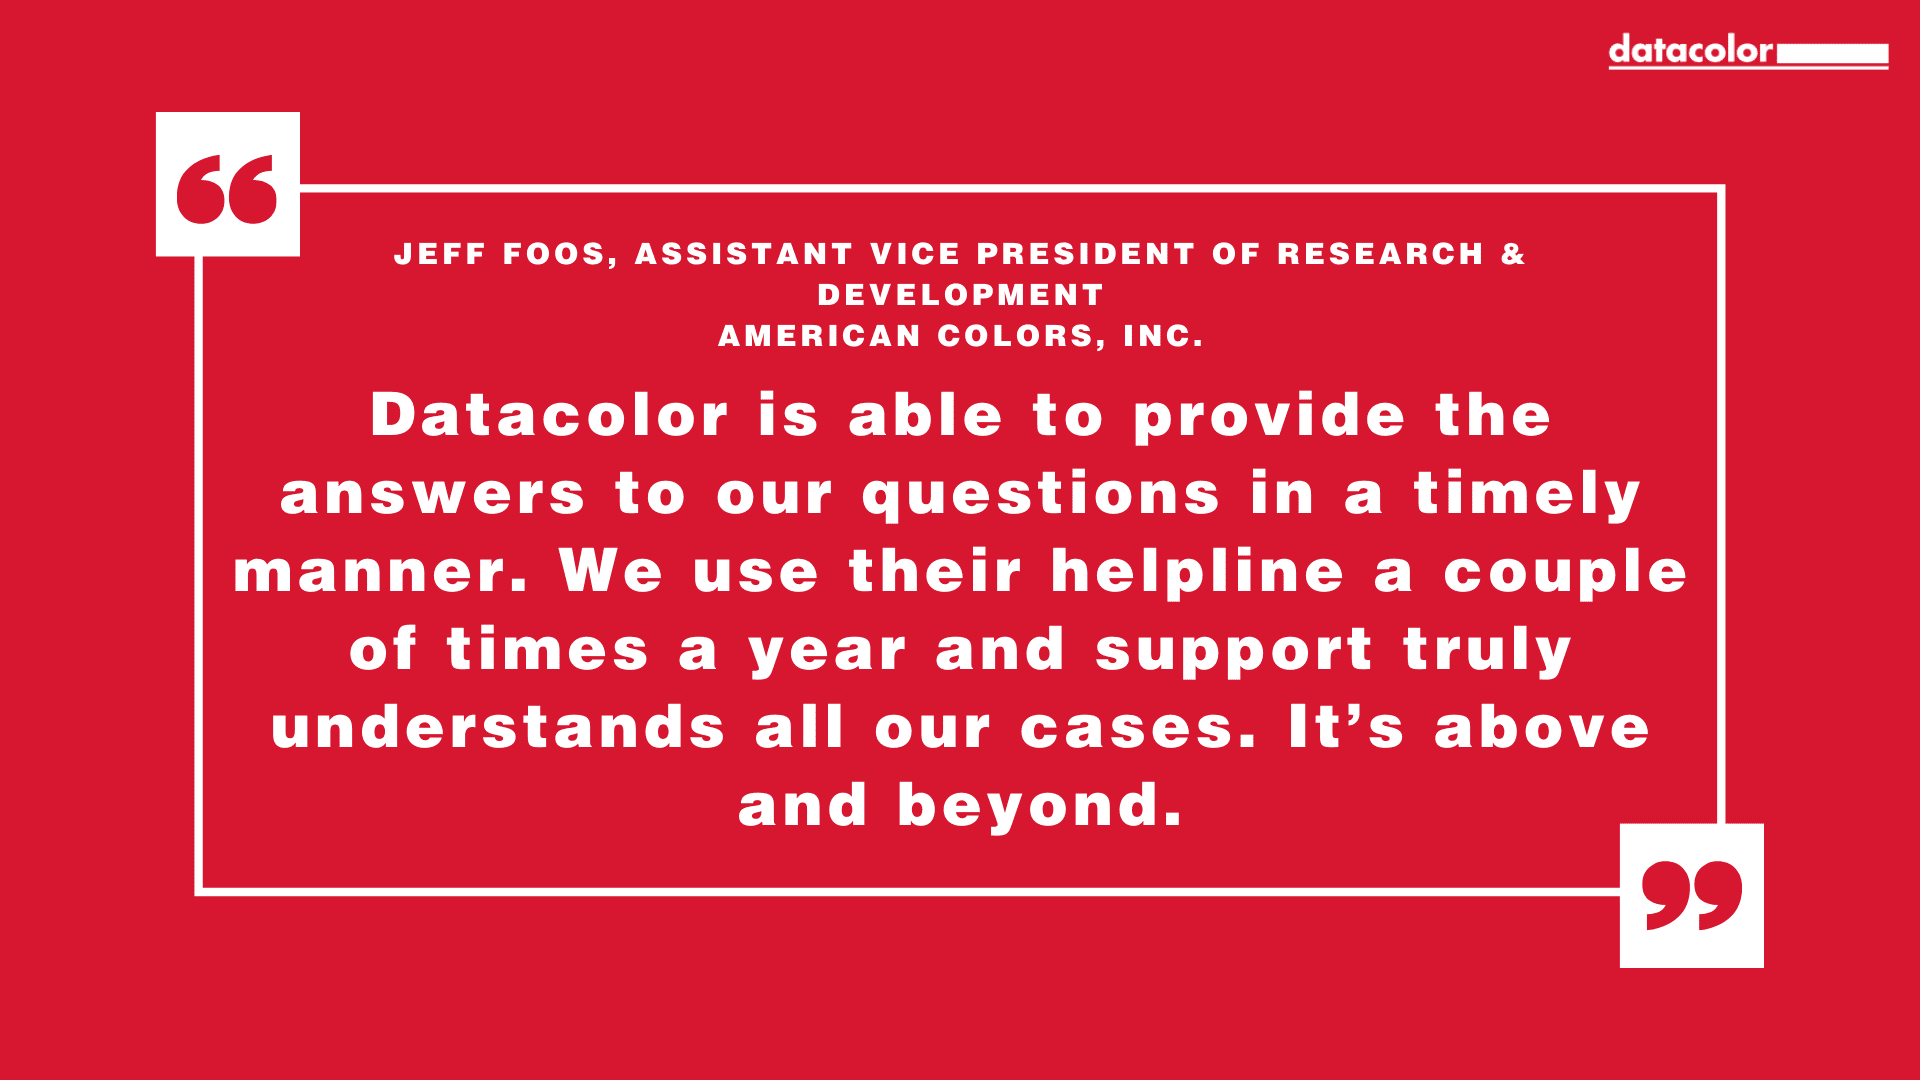 Jeff Foos, stellvertretender Vizepräsident für Forschung und Entwicklung bei American Colors